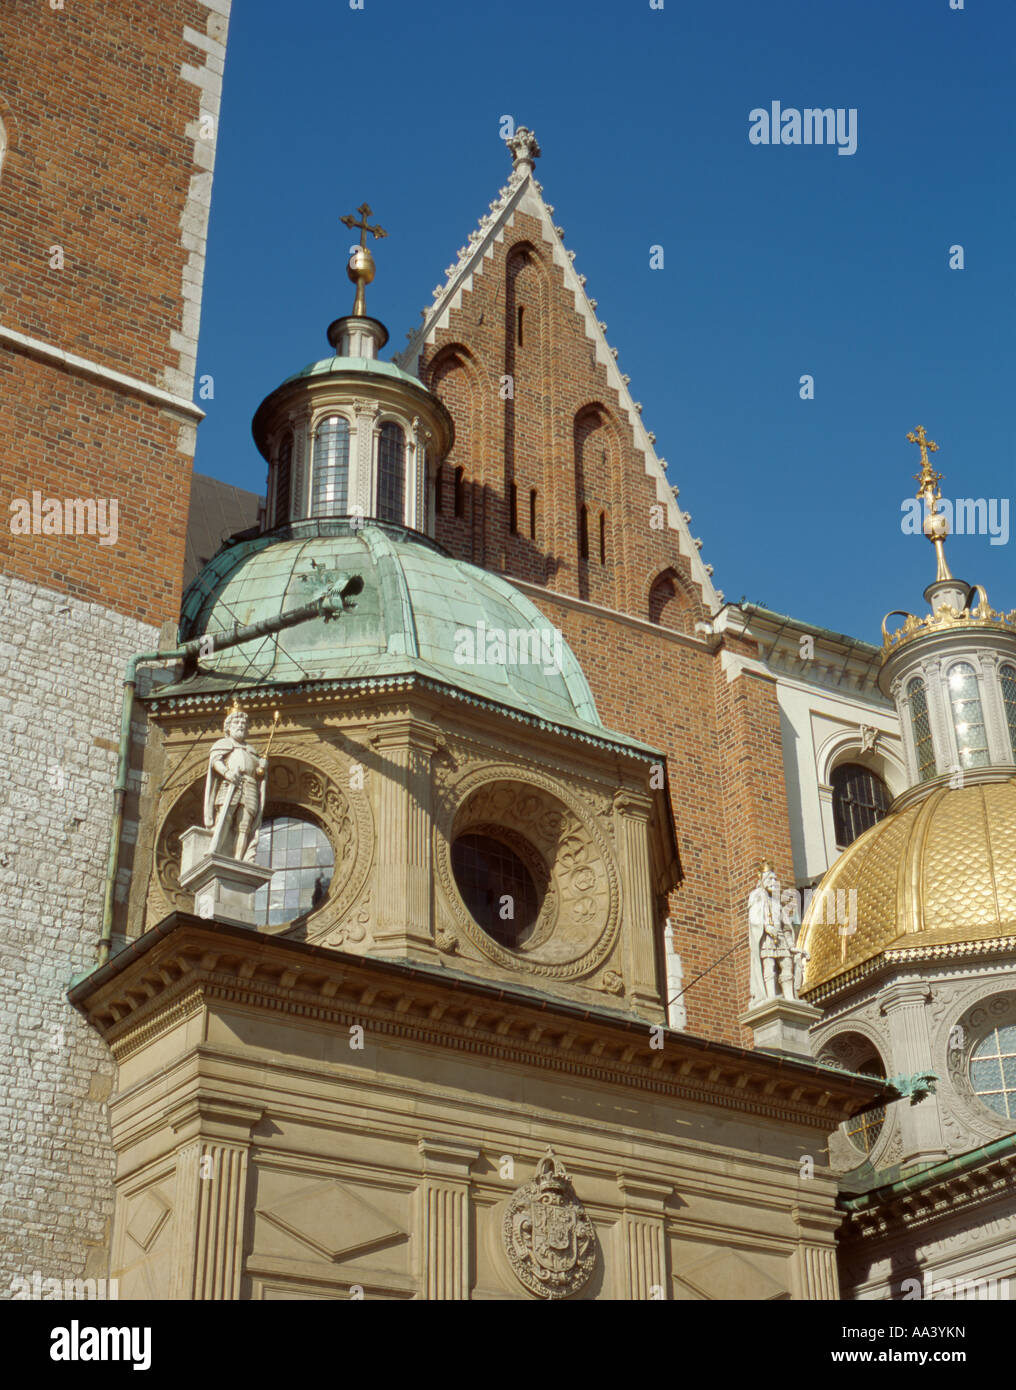 Détail extérieur de deux chapelles, la cathédrale de Wavel, royal wavel hill, Cracovie, Pologne, Malopolska. Banque D'Images